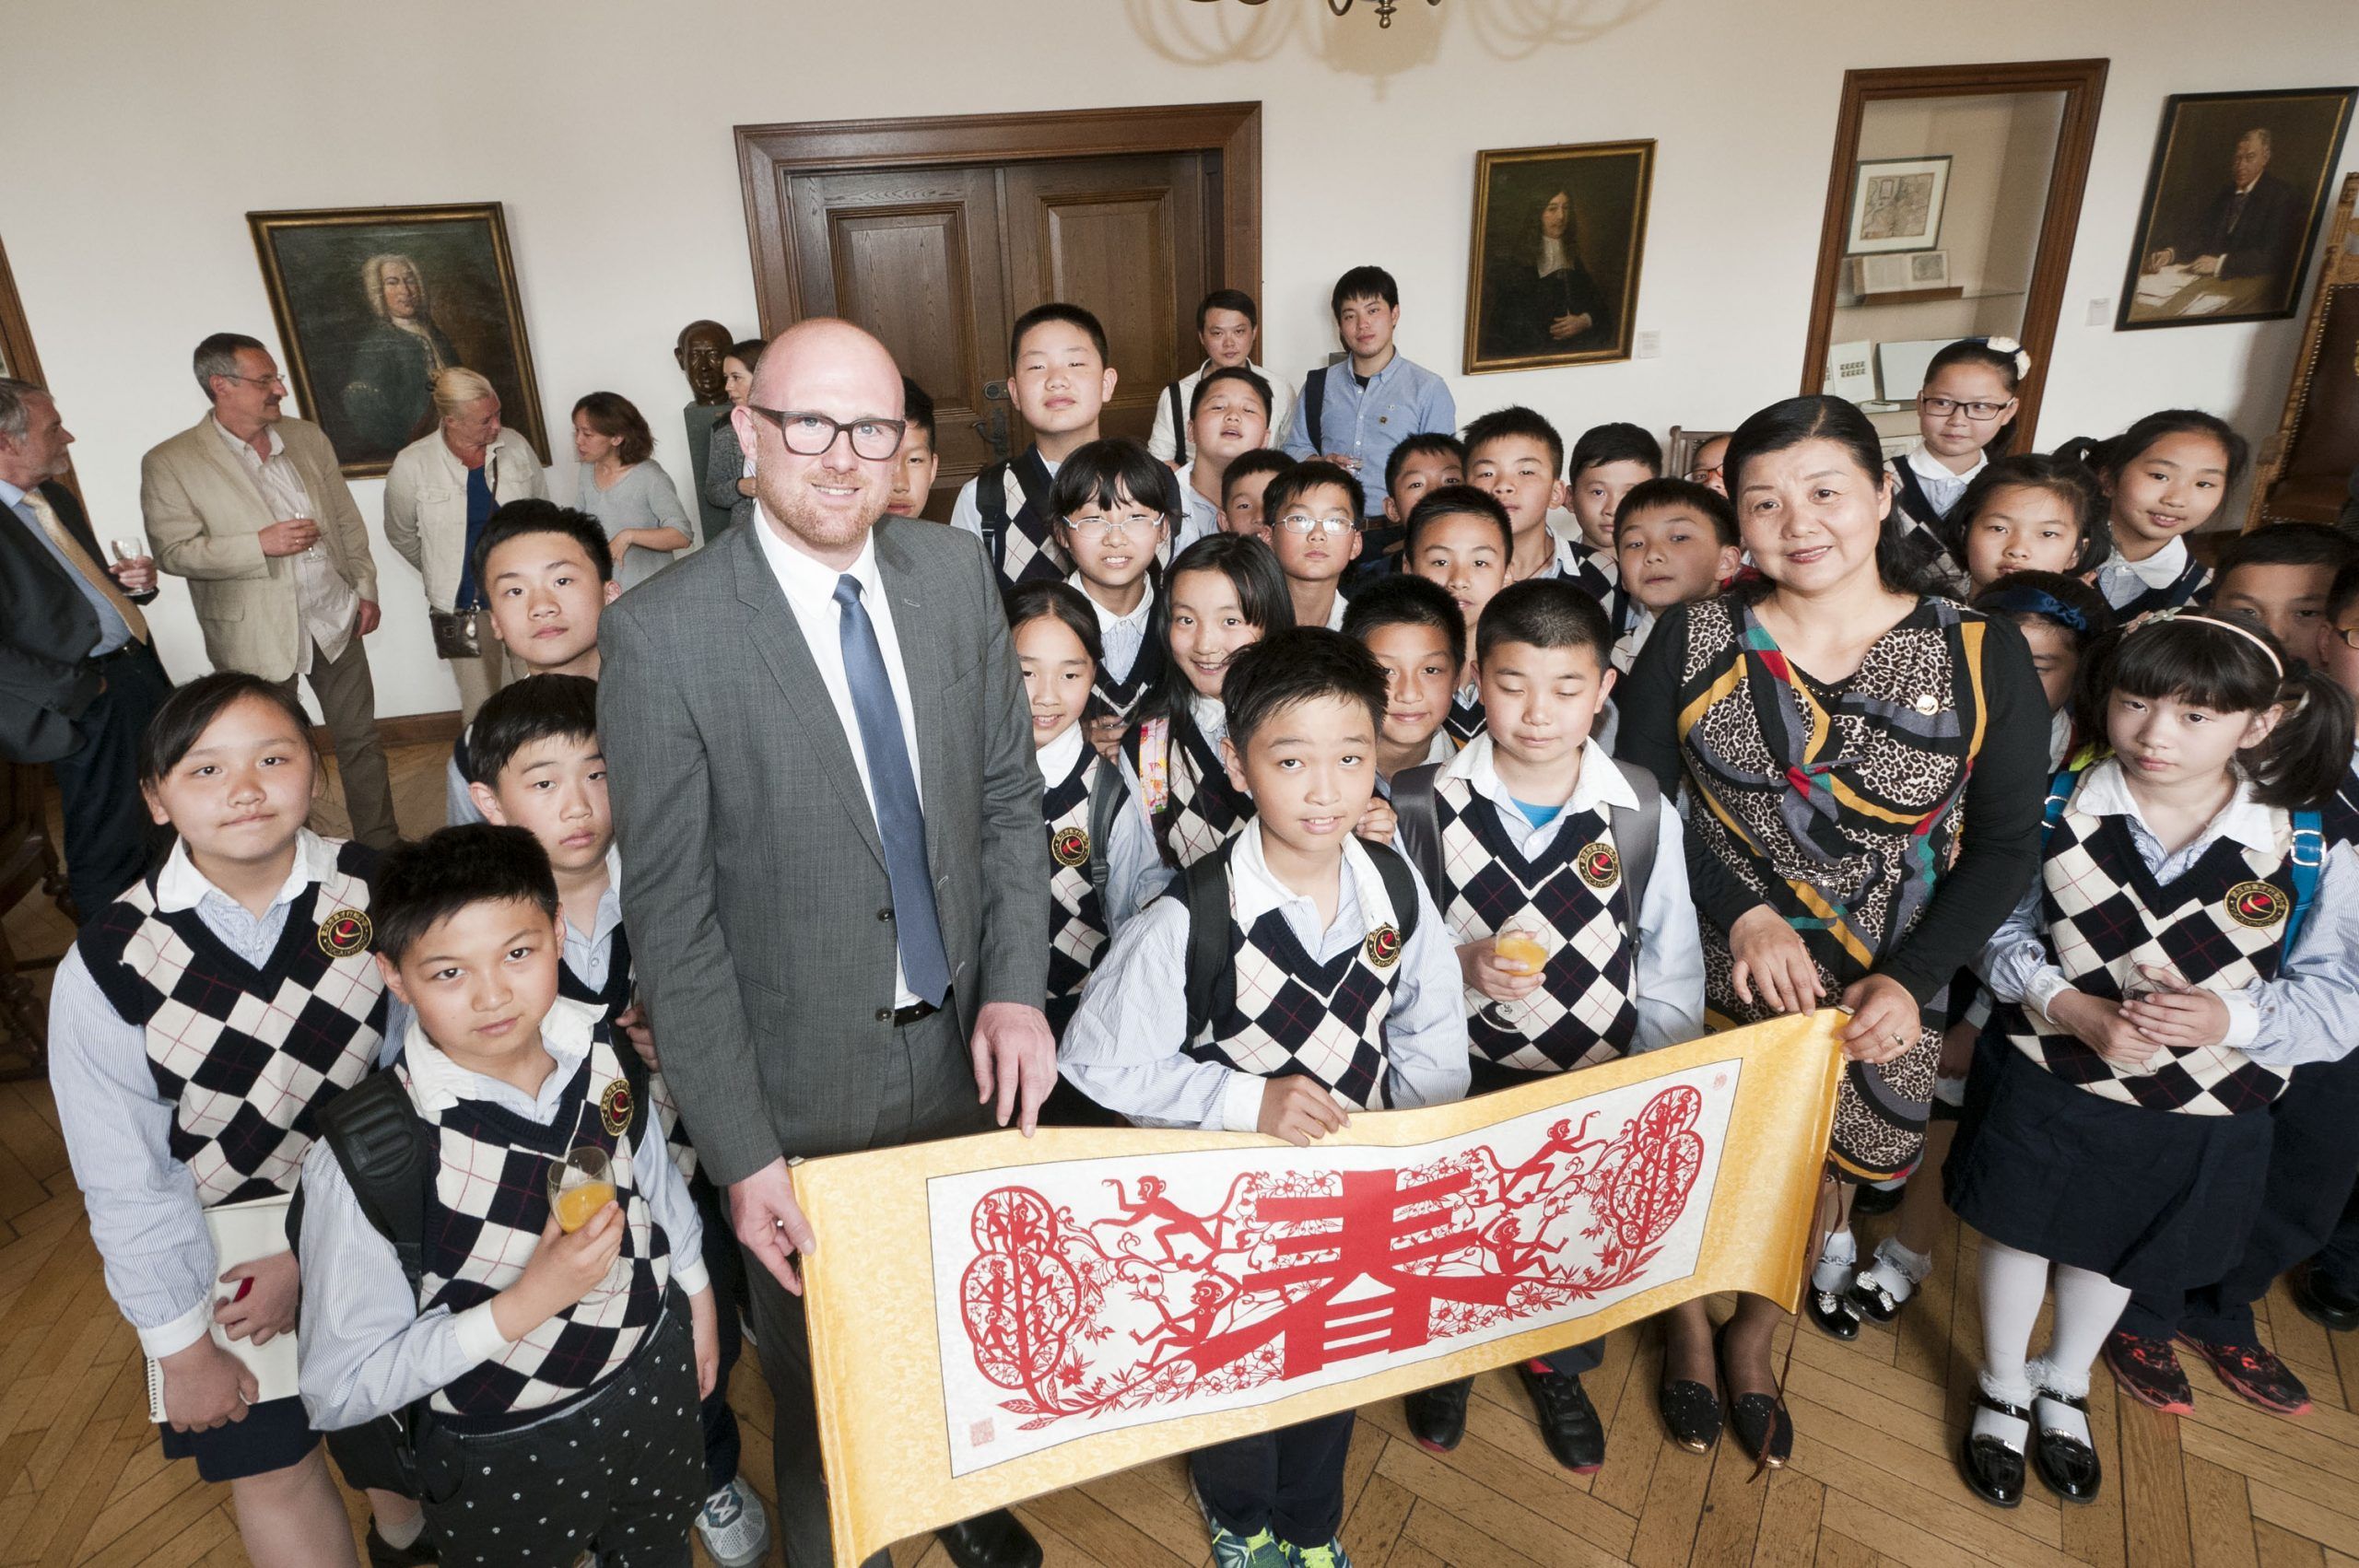 Der Besuch von Schülergruppen ist nur eine der vielen Beziehungen zwischen den Ländern. Eine Schulklasse aus Wuhan im Jahr 2016 zu Gast im Duisburger Rathaus. Foto: Stadt Duisburg.